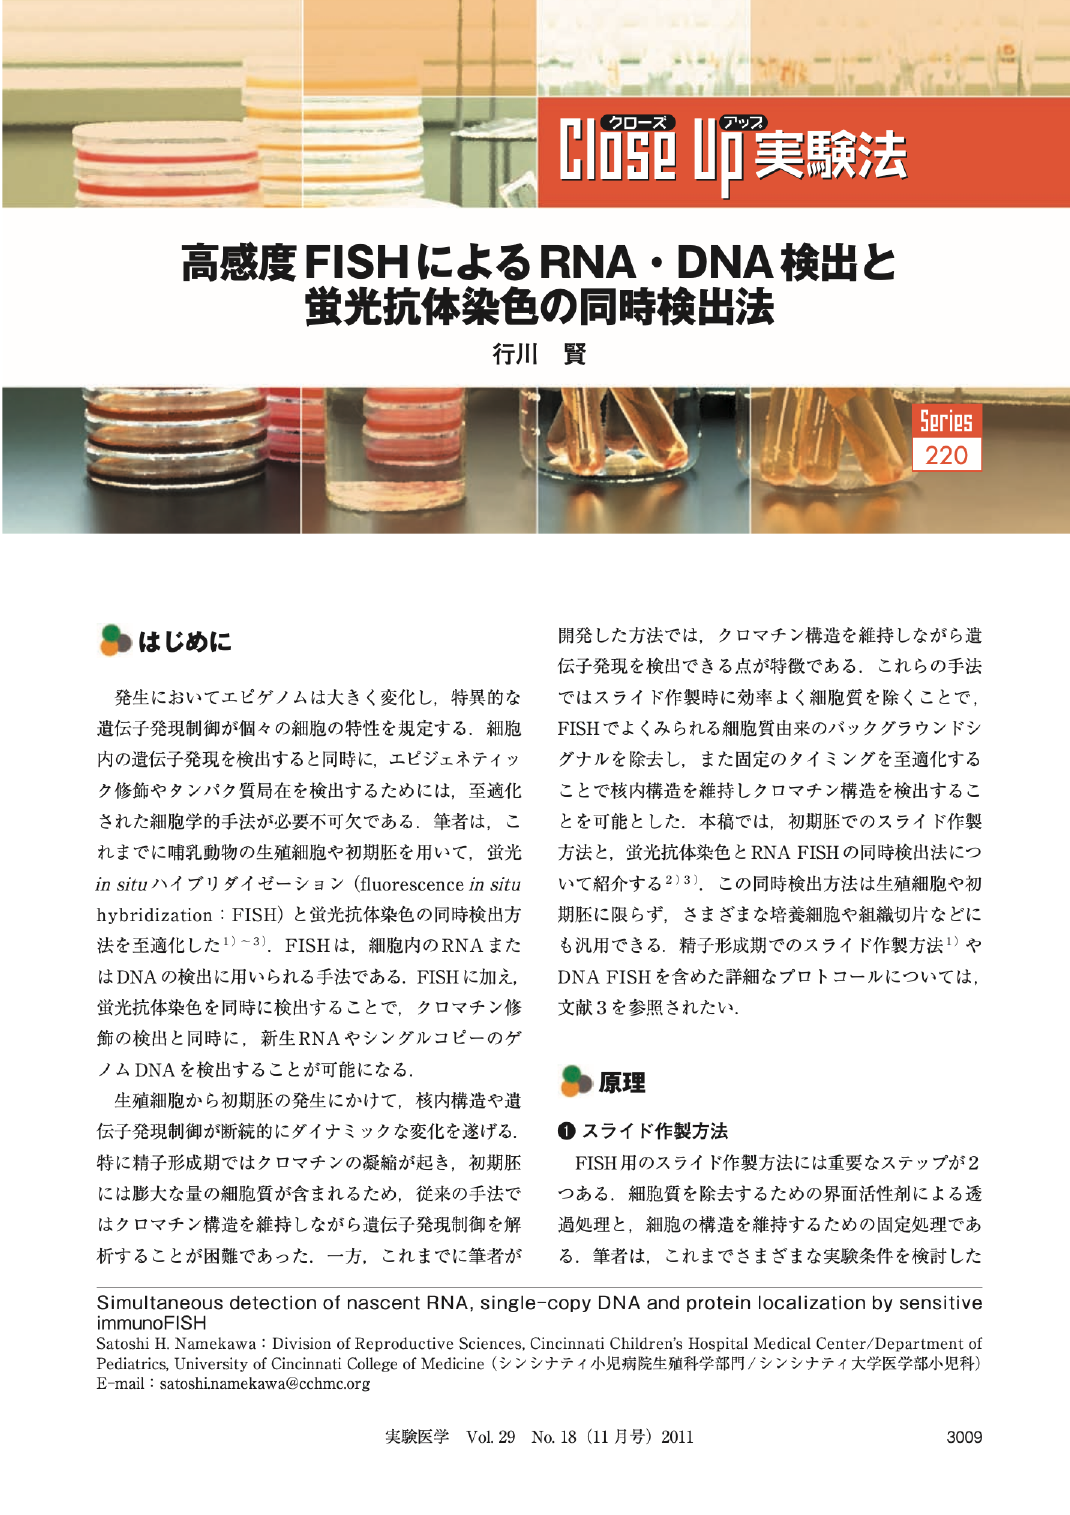 高感度FISHによるRNA・DNA検出と蛍光抗体染色の同時検出法